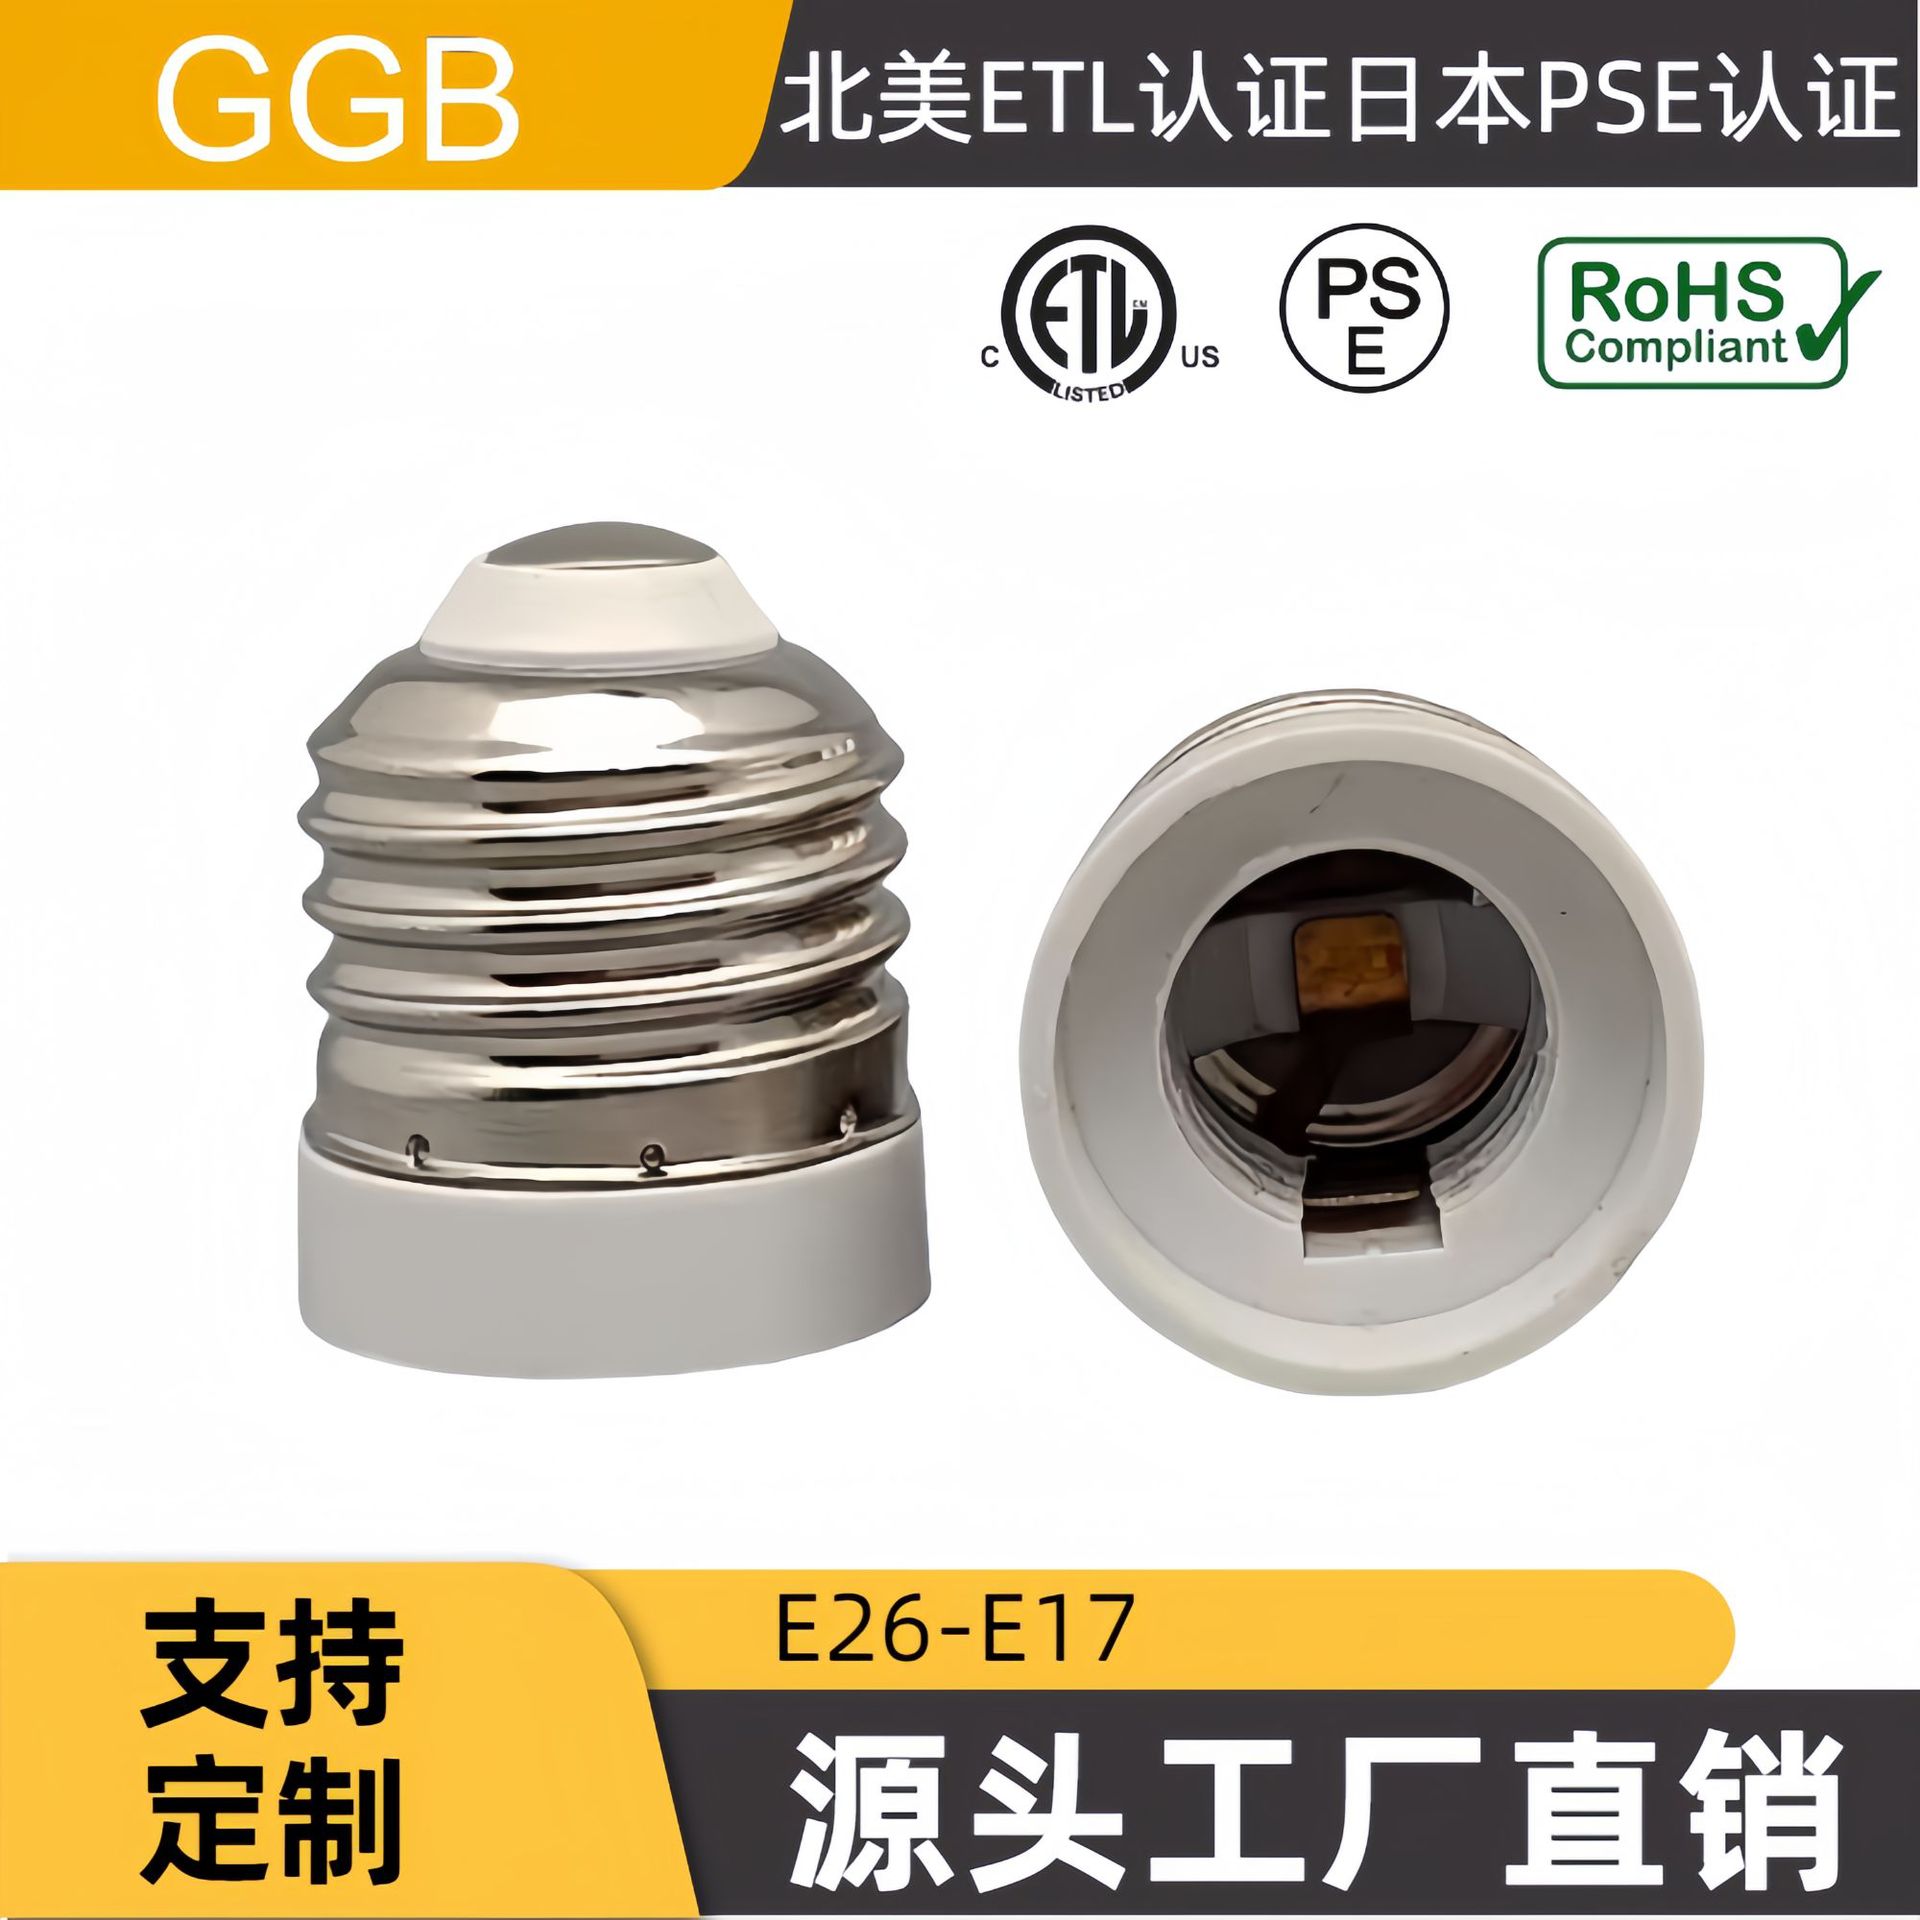  GGB lamp holder adapter North America ETL Japan PSE E26-E17 conversion lamp holder